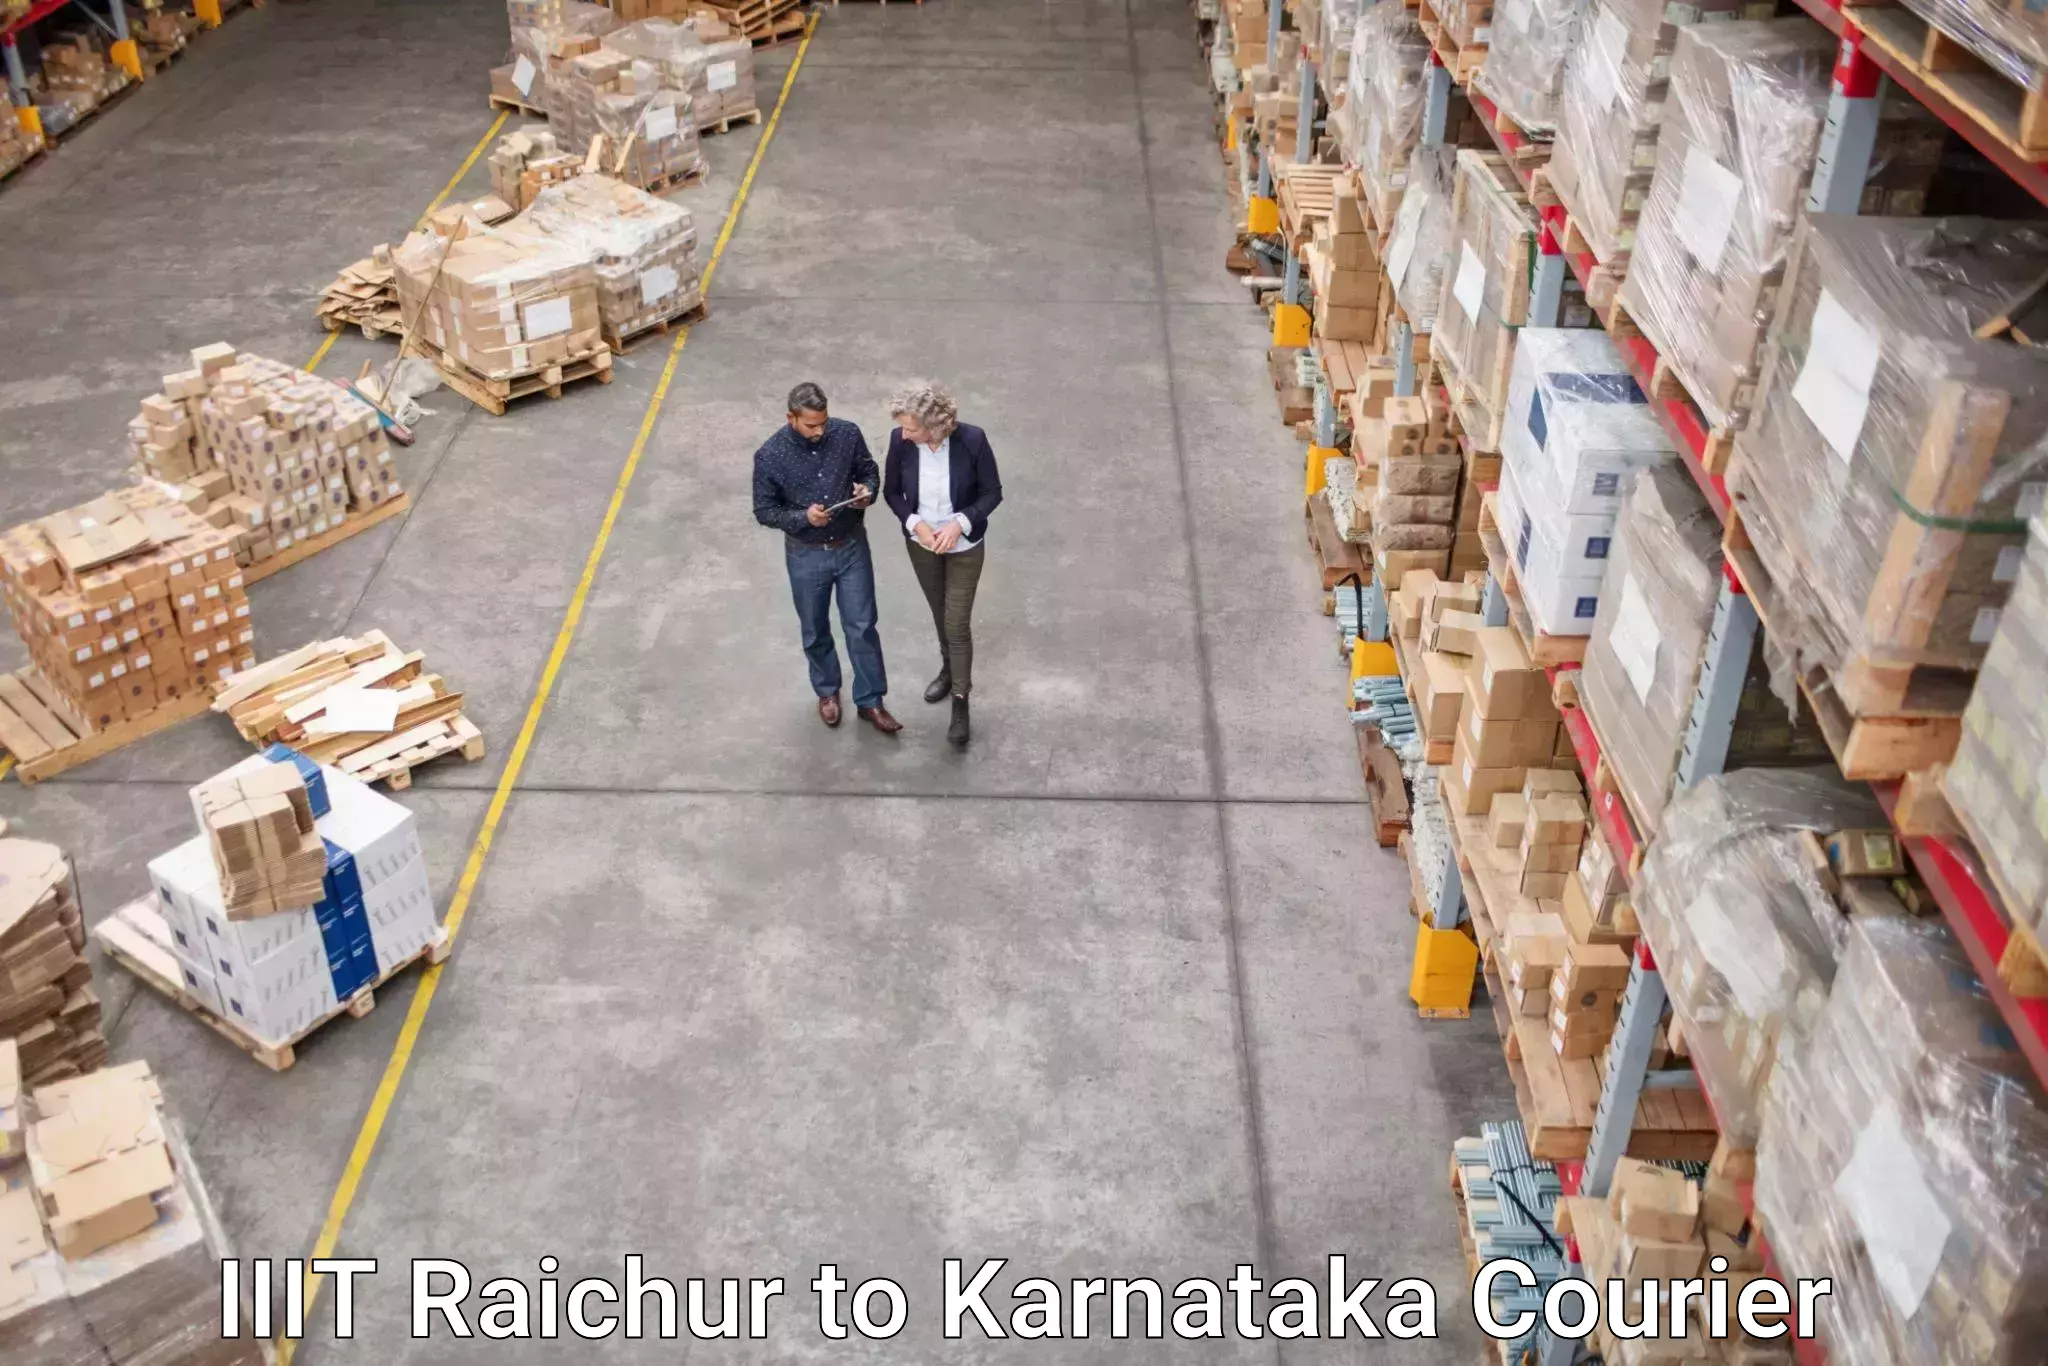 Affordable parcel service IIIT Raichur to Kalaburagi